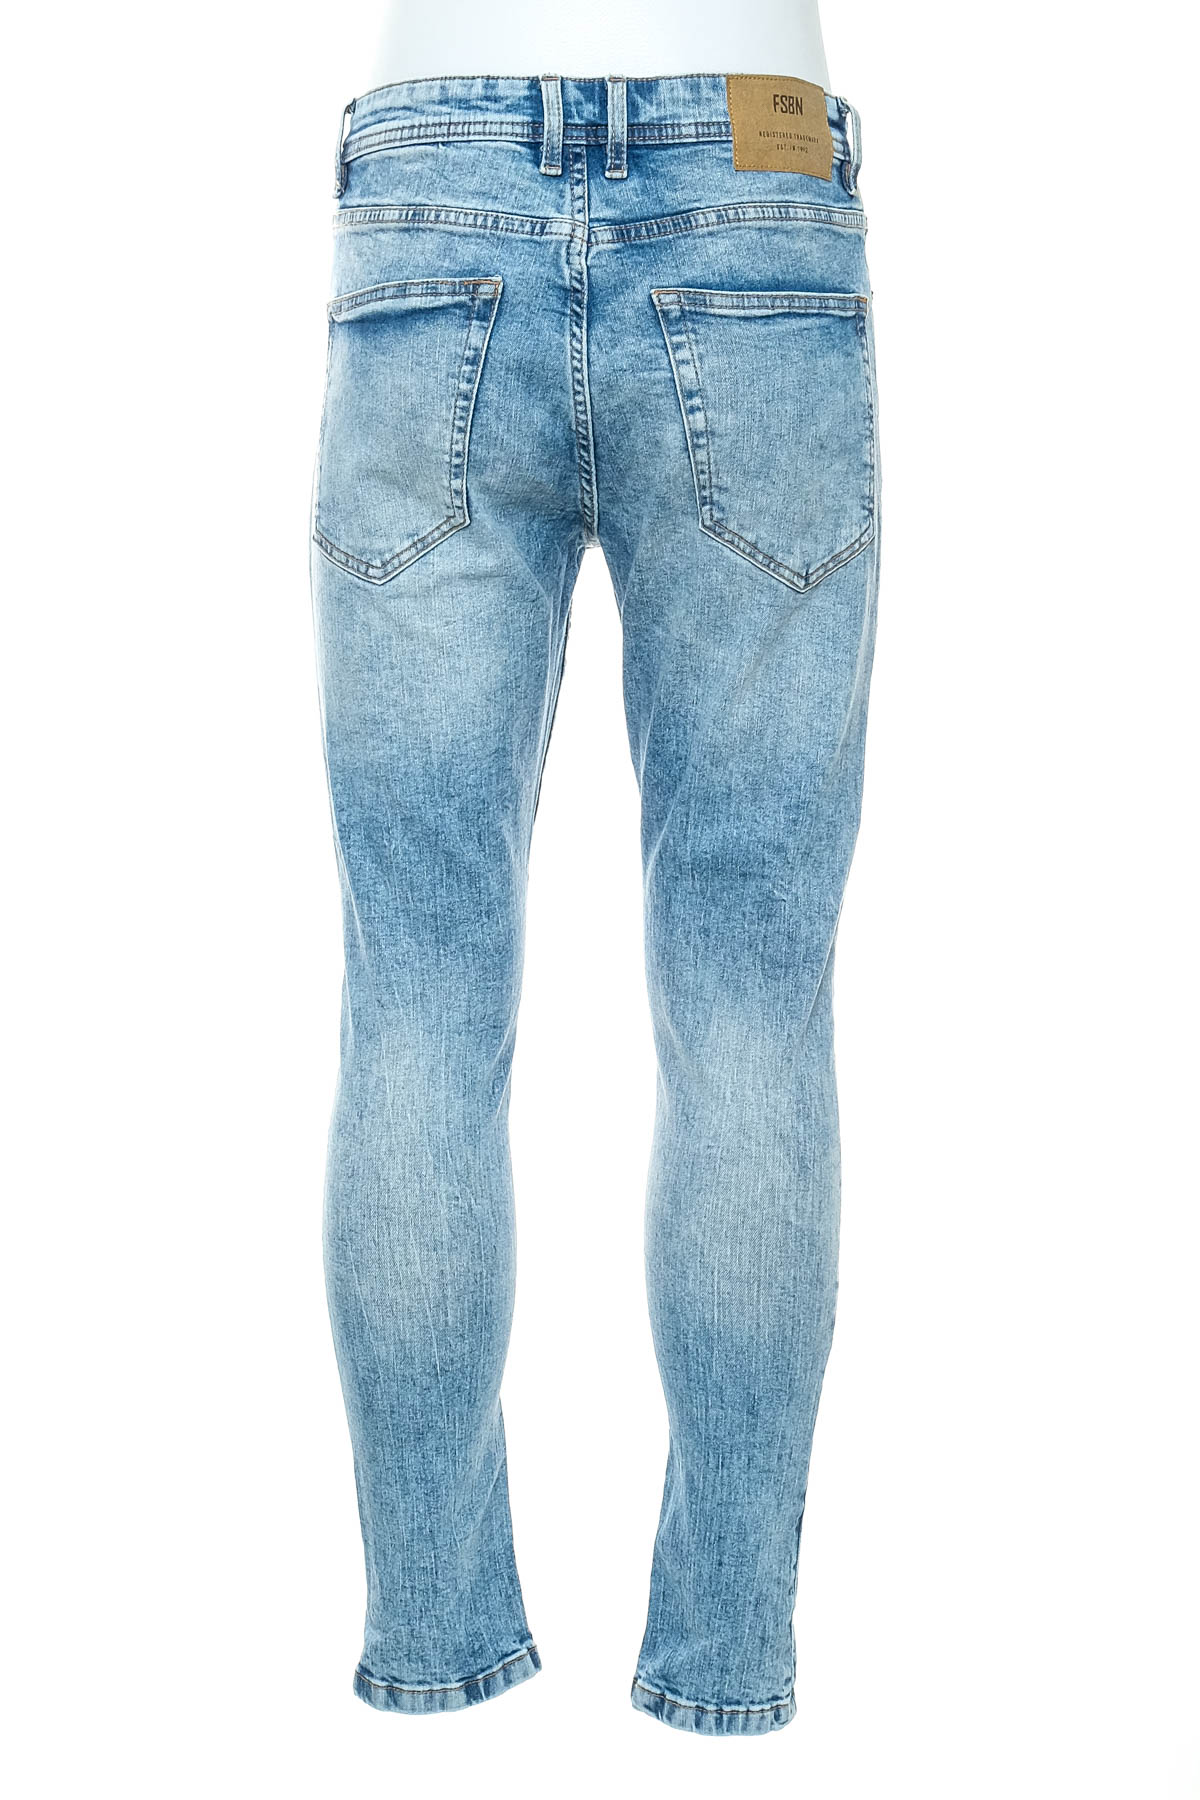 Men's jeans - FSBN - 1